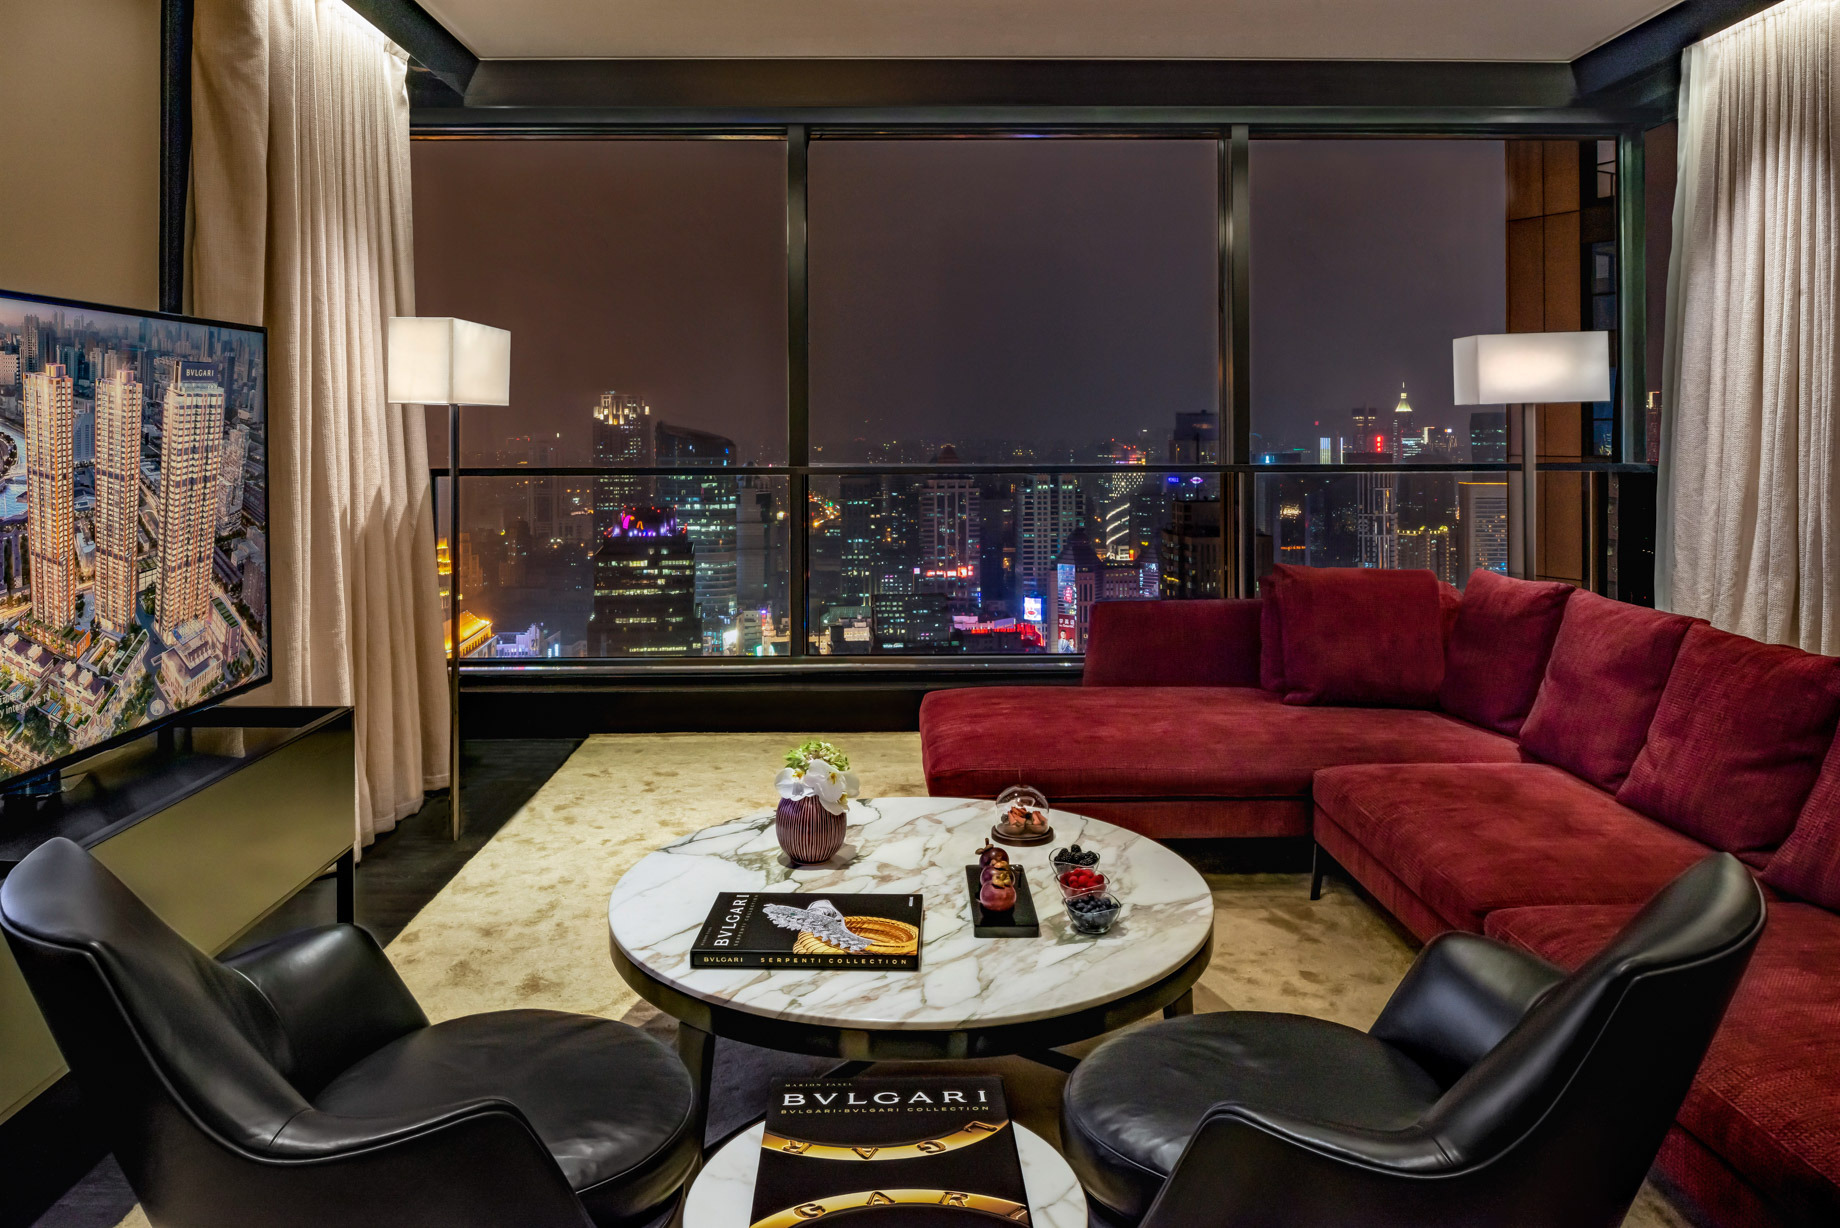 Bvlgari Hotel Shanghai – Shanghai, China – Suite Living Room Night View